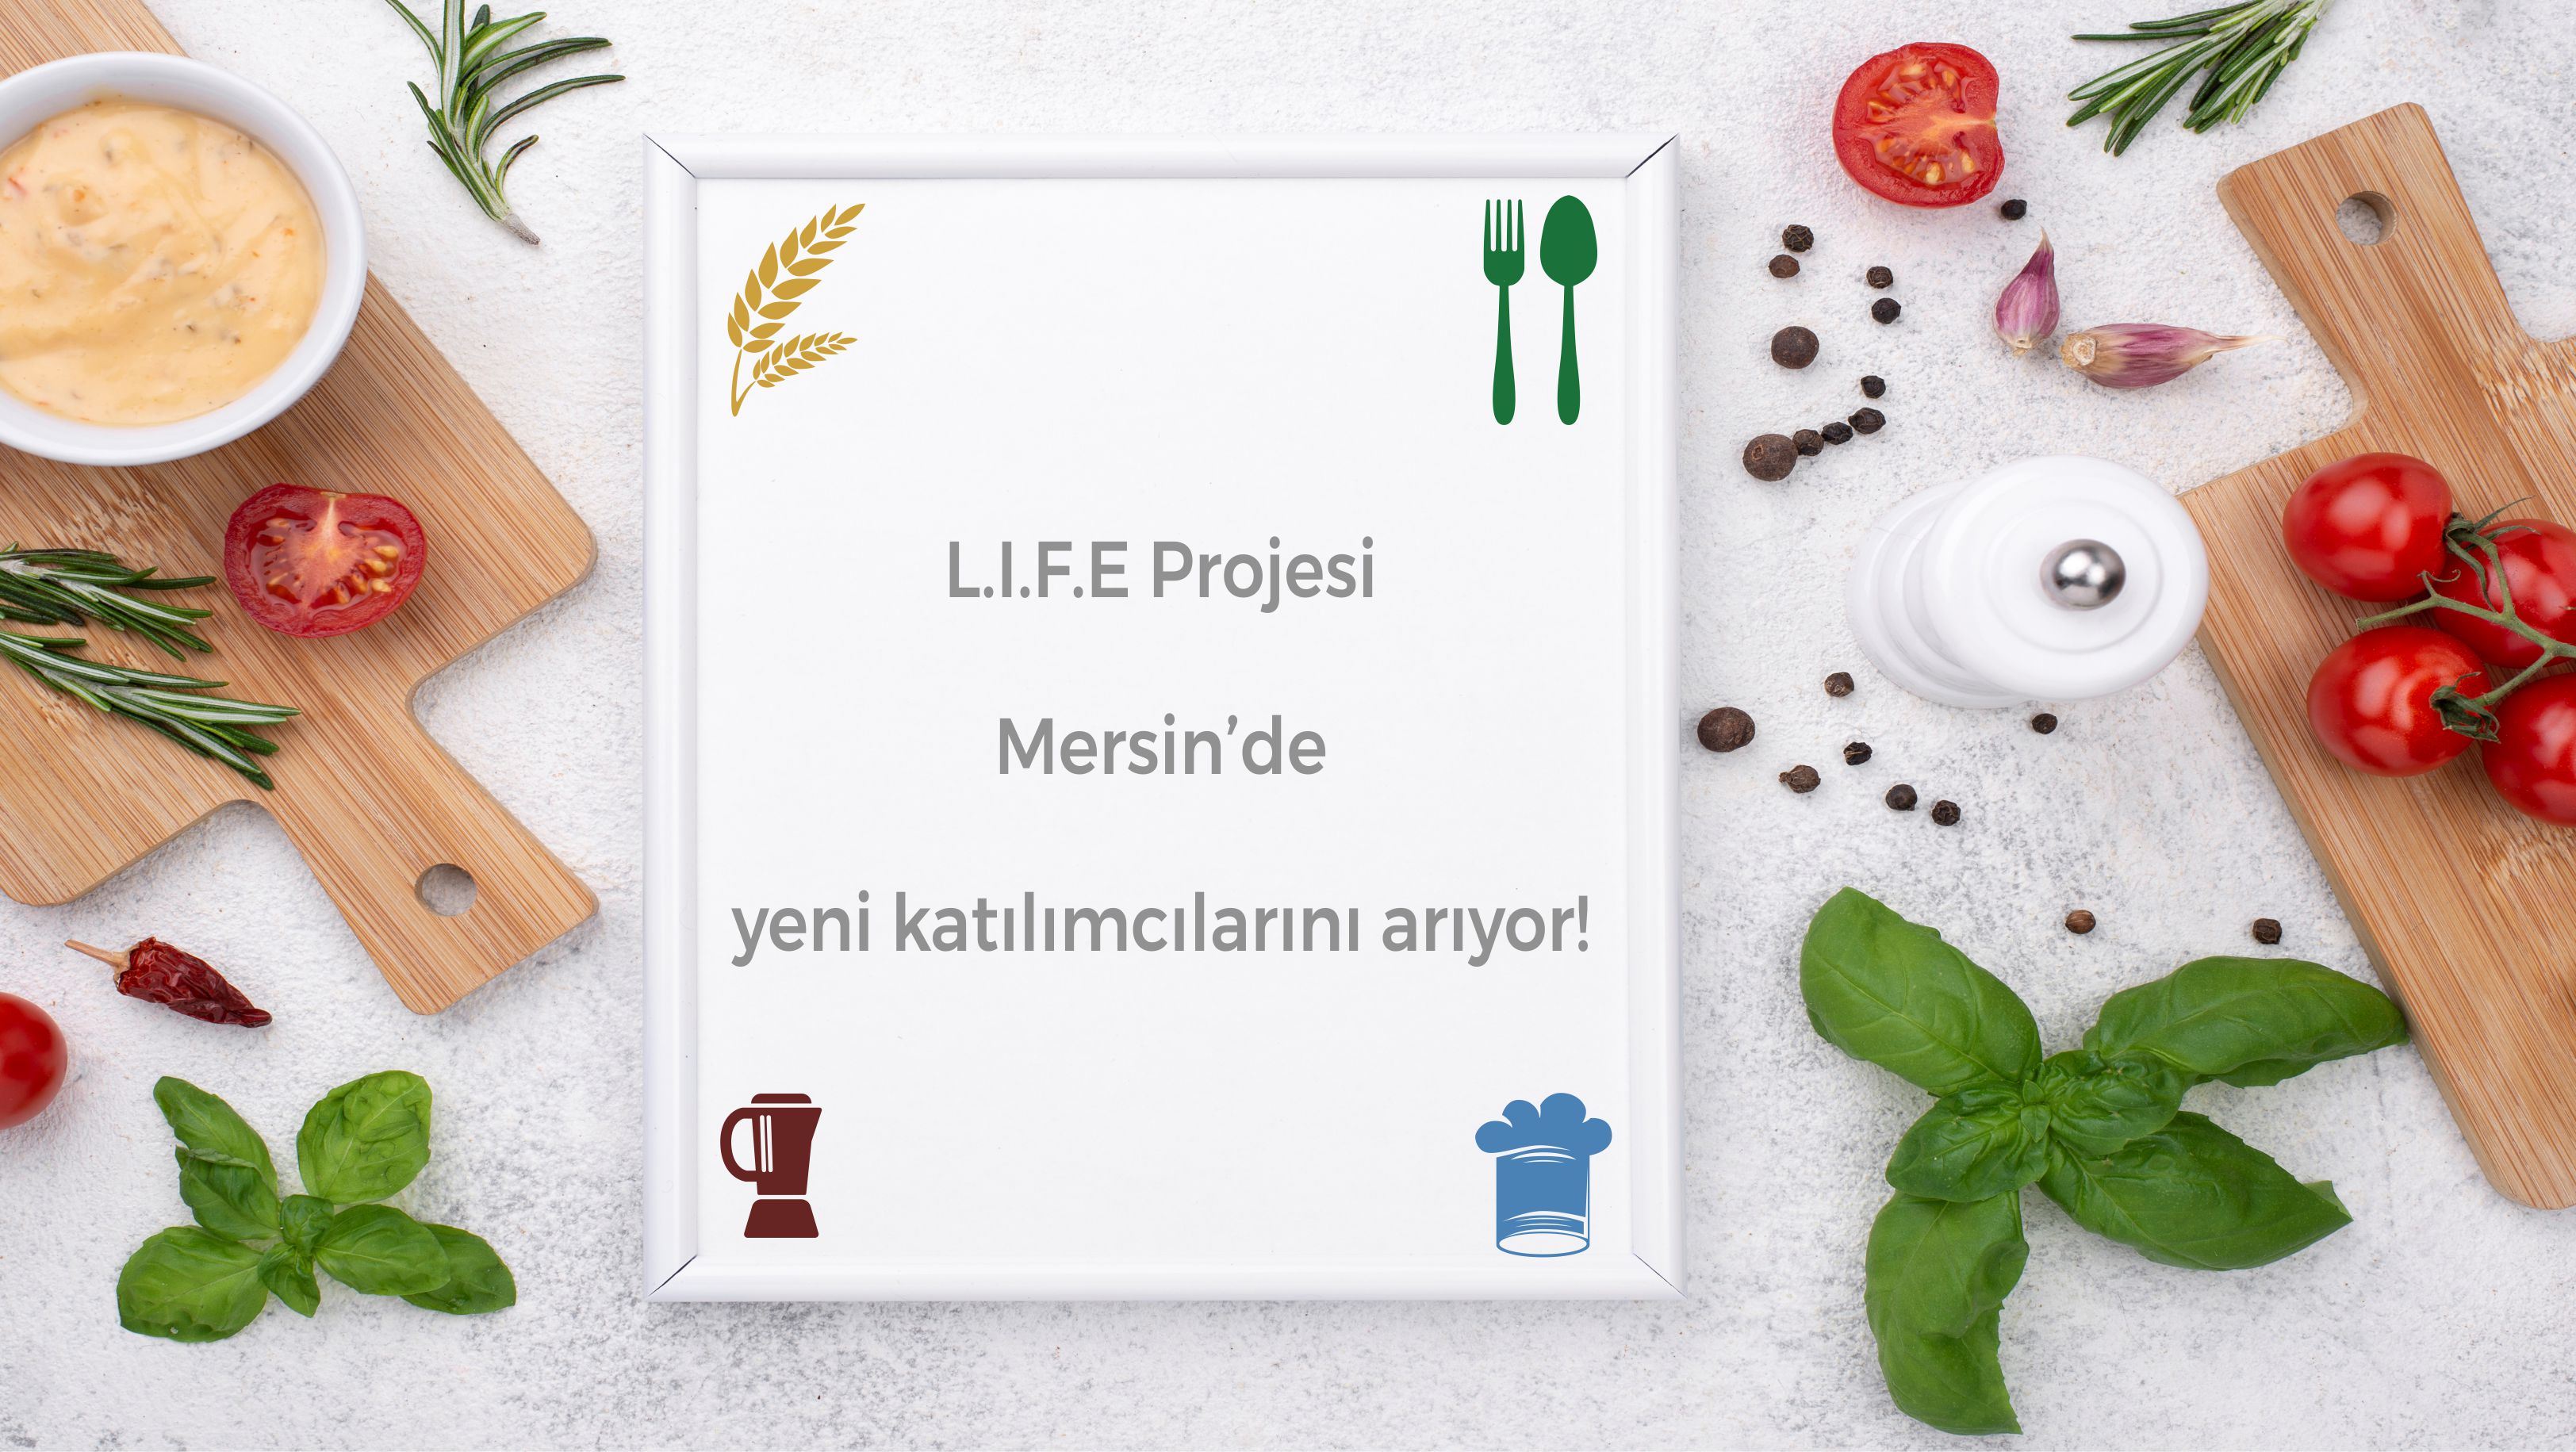 L.I.F.E (Gıda Girişimciliği İle Yenilikçi Geçim Kaynakları) Projesi, Mersin’de yeni dönem katılımcılarını arıyor!